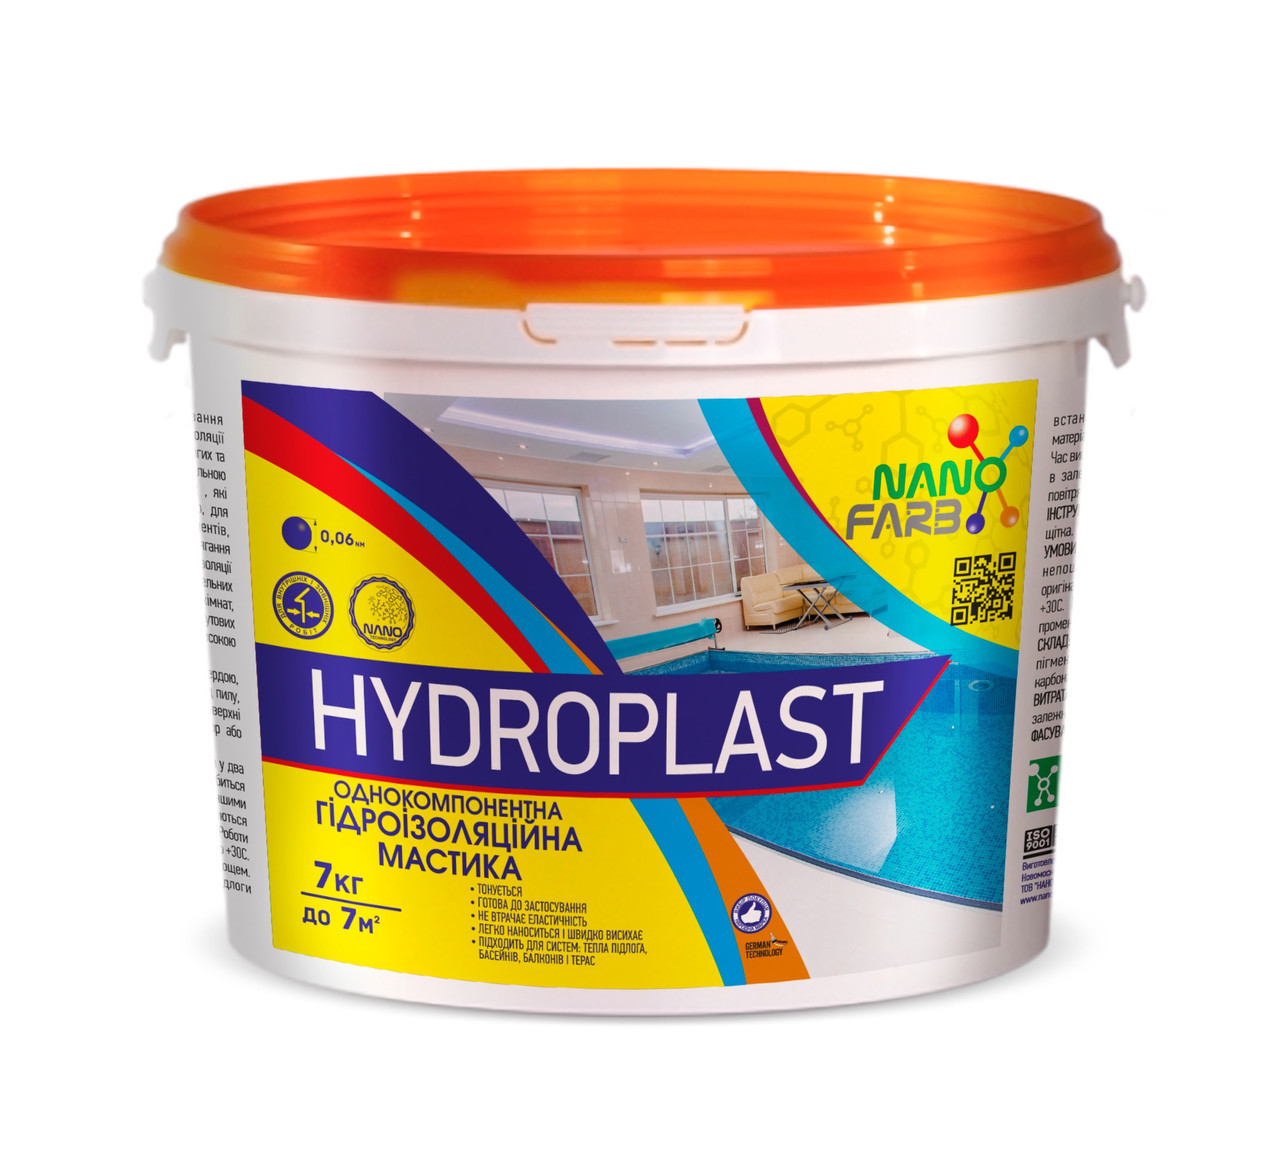 Гідроізоляційна мастика Hydroplast Nano farb 7 кг